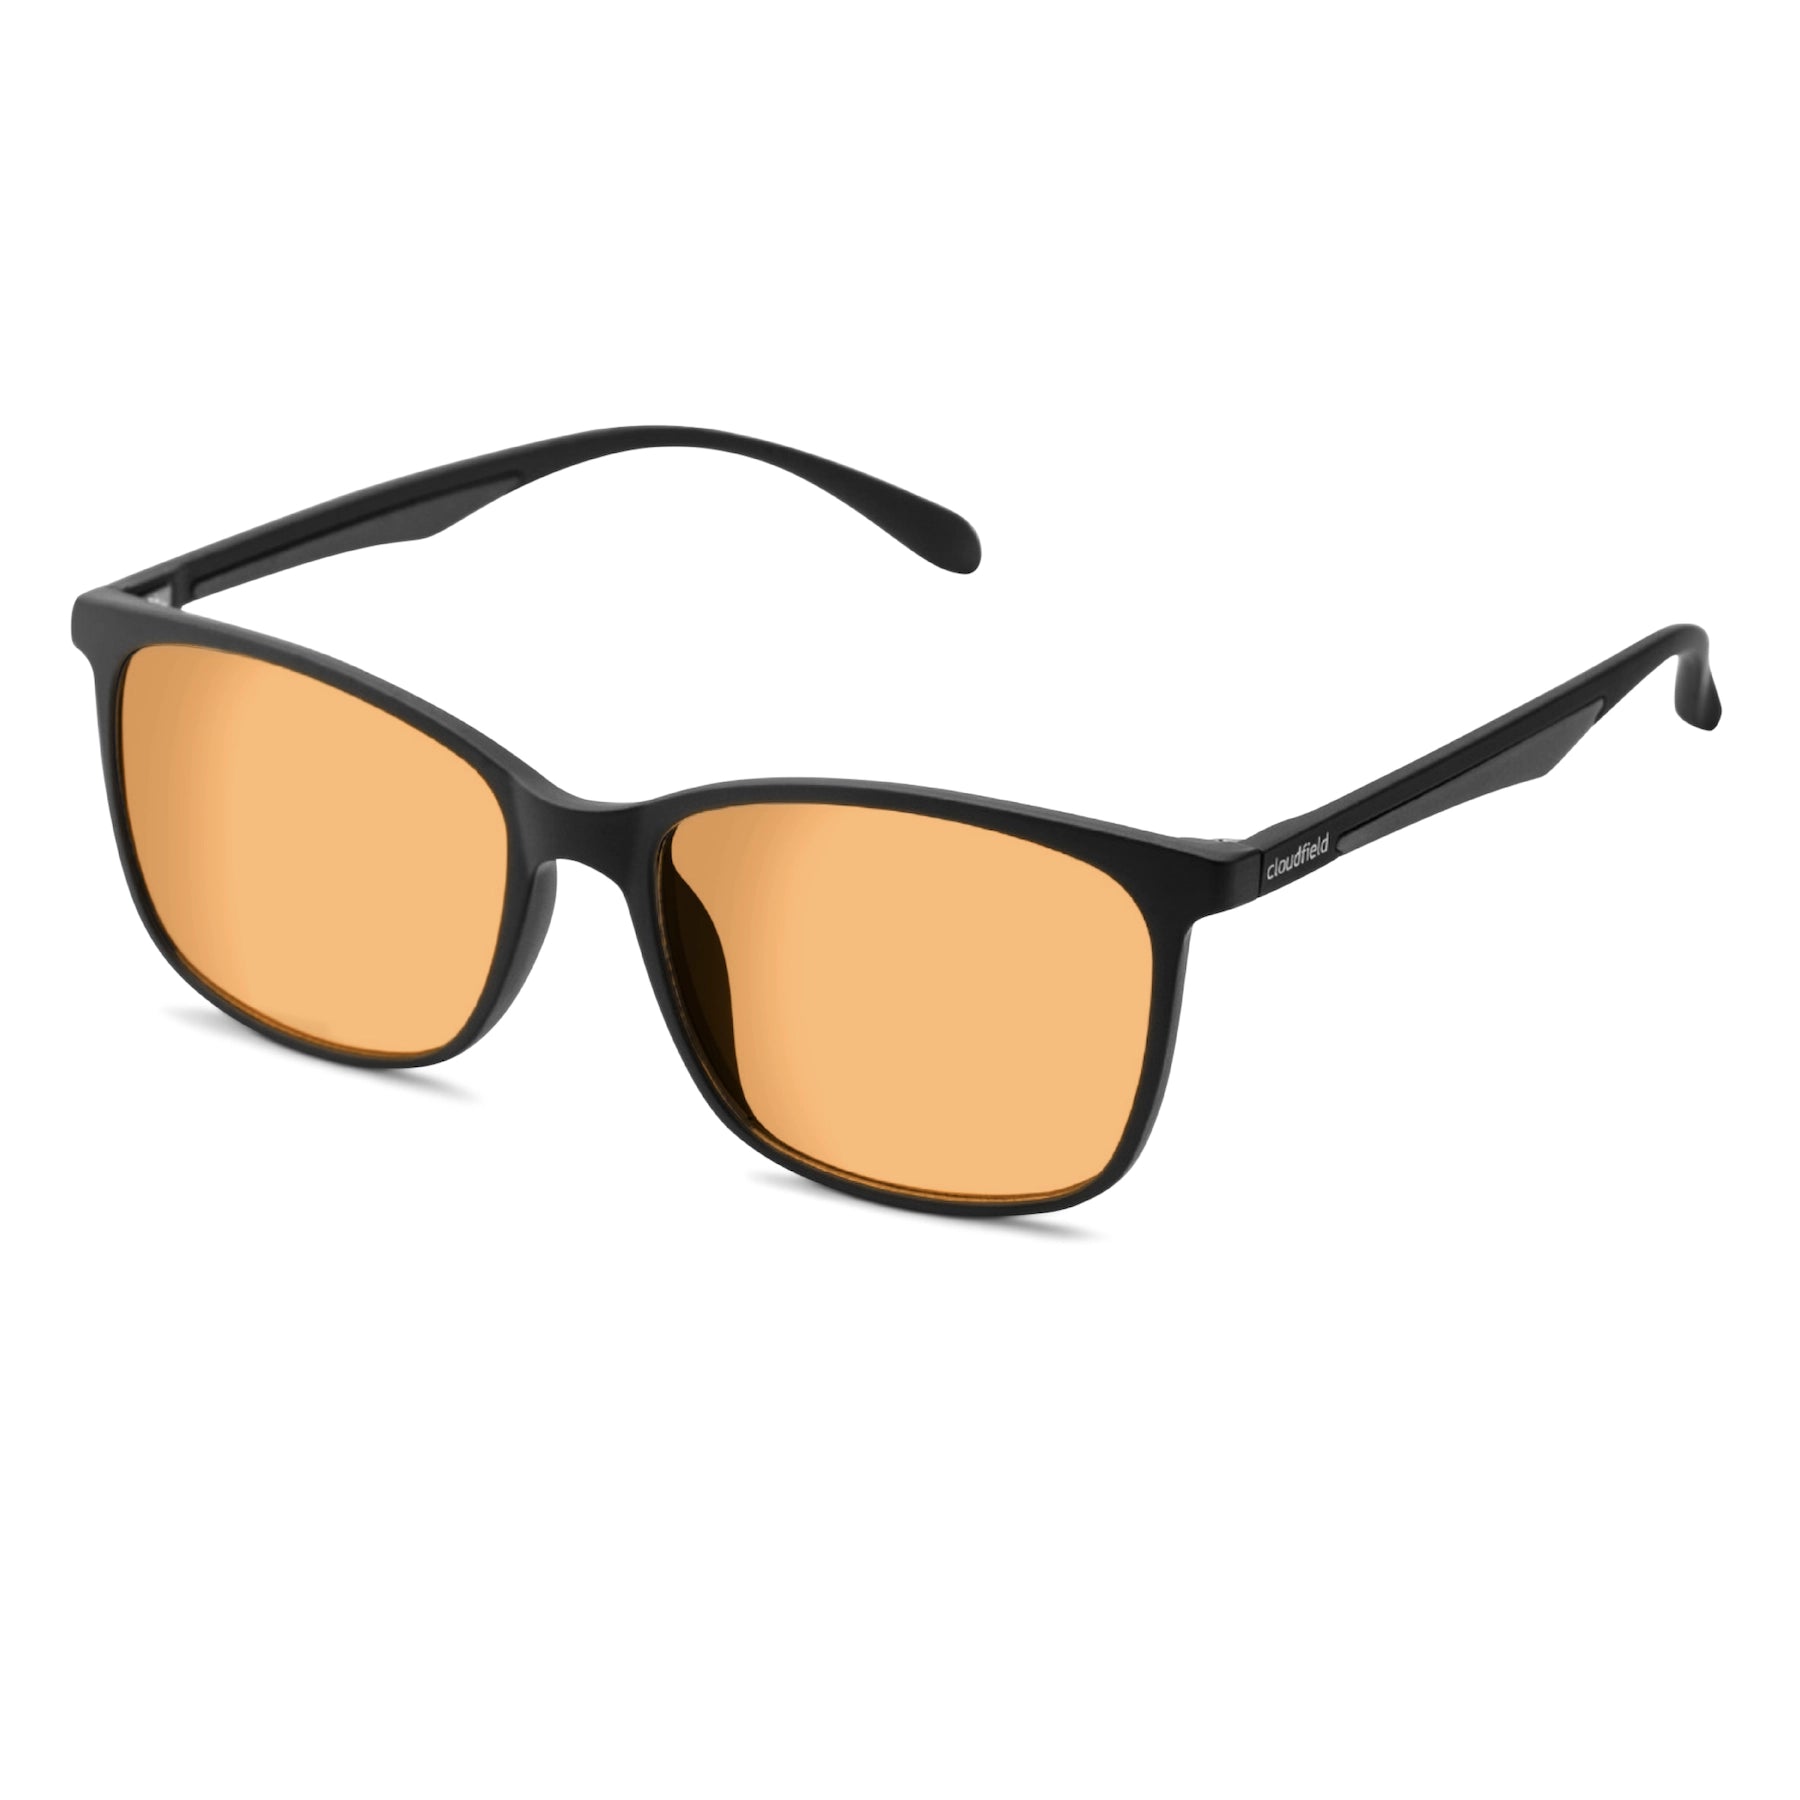 What are Polarised Sunglasses? | Vision Direct AU